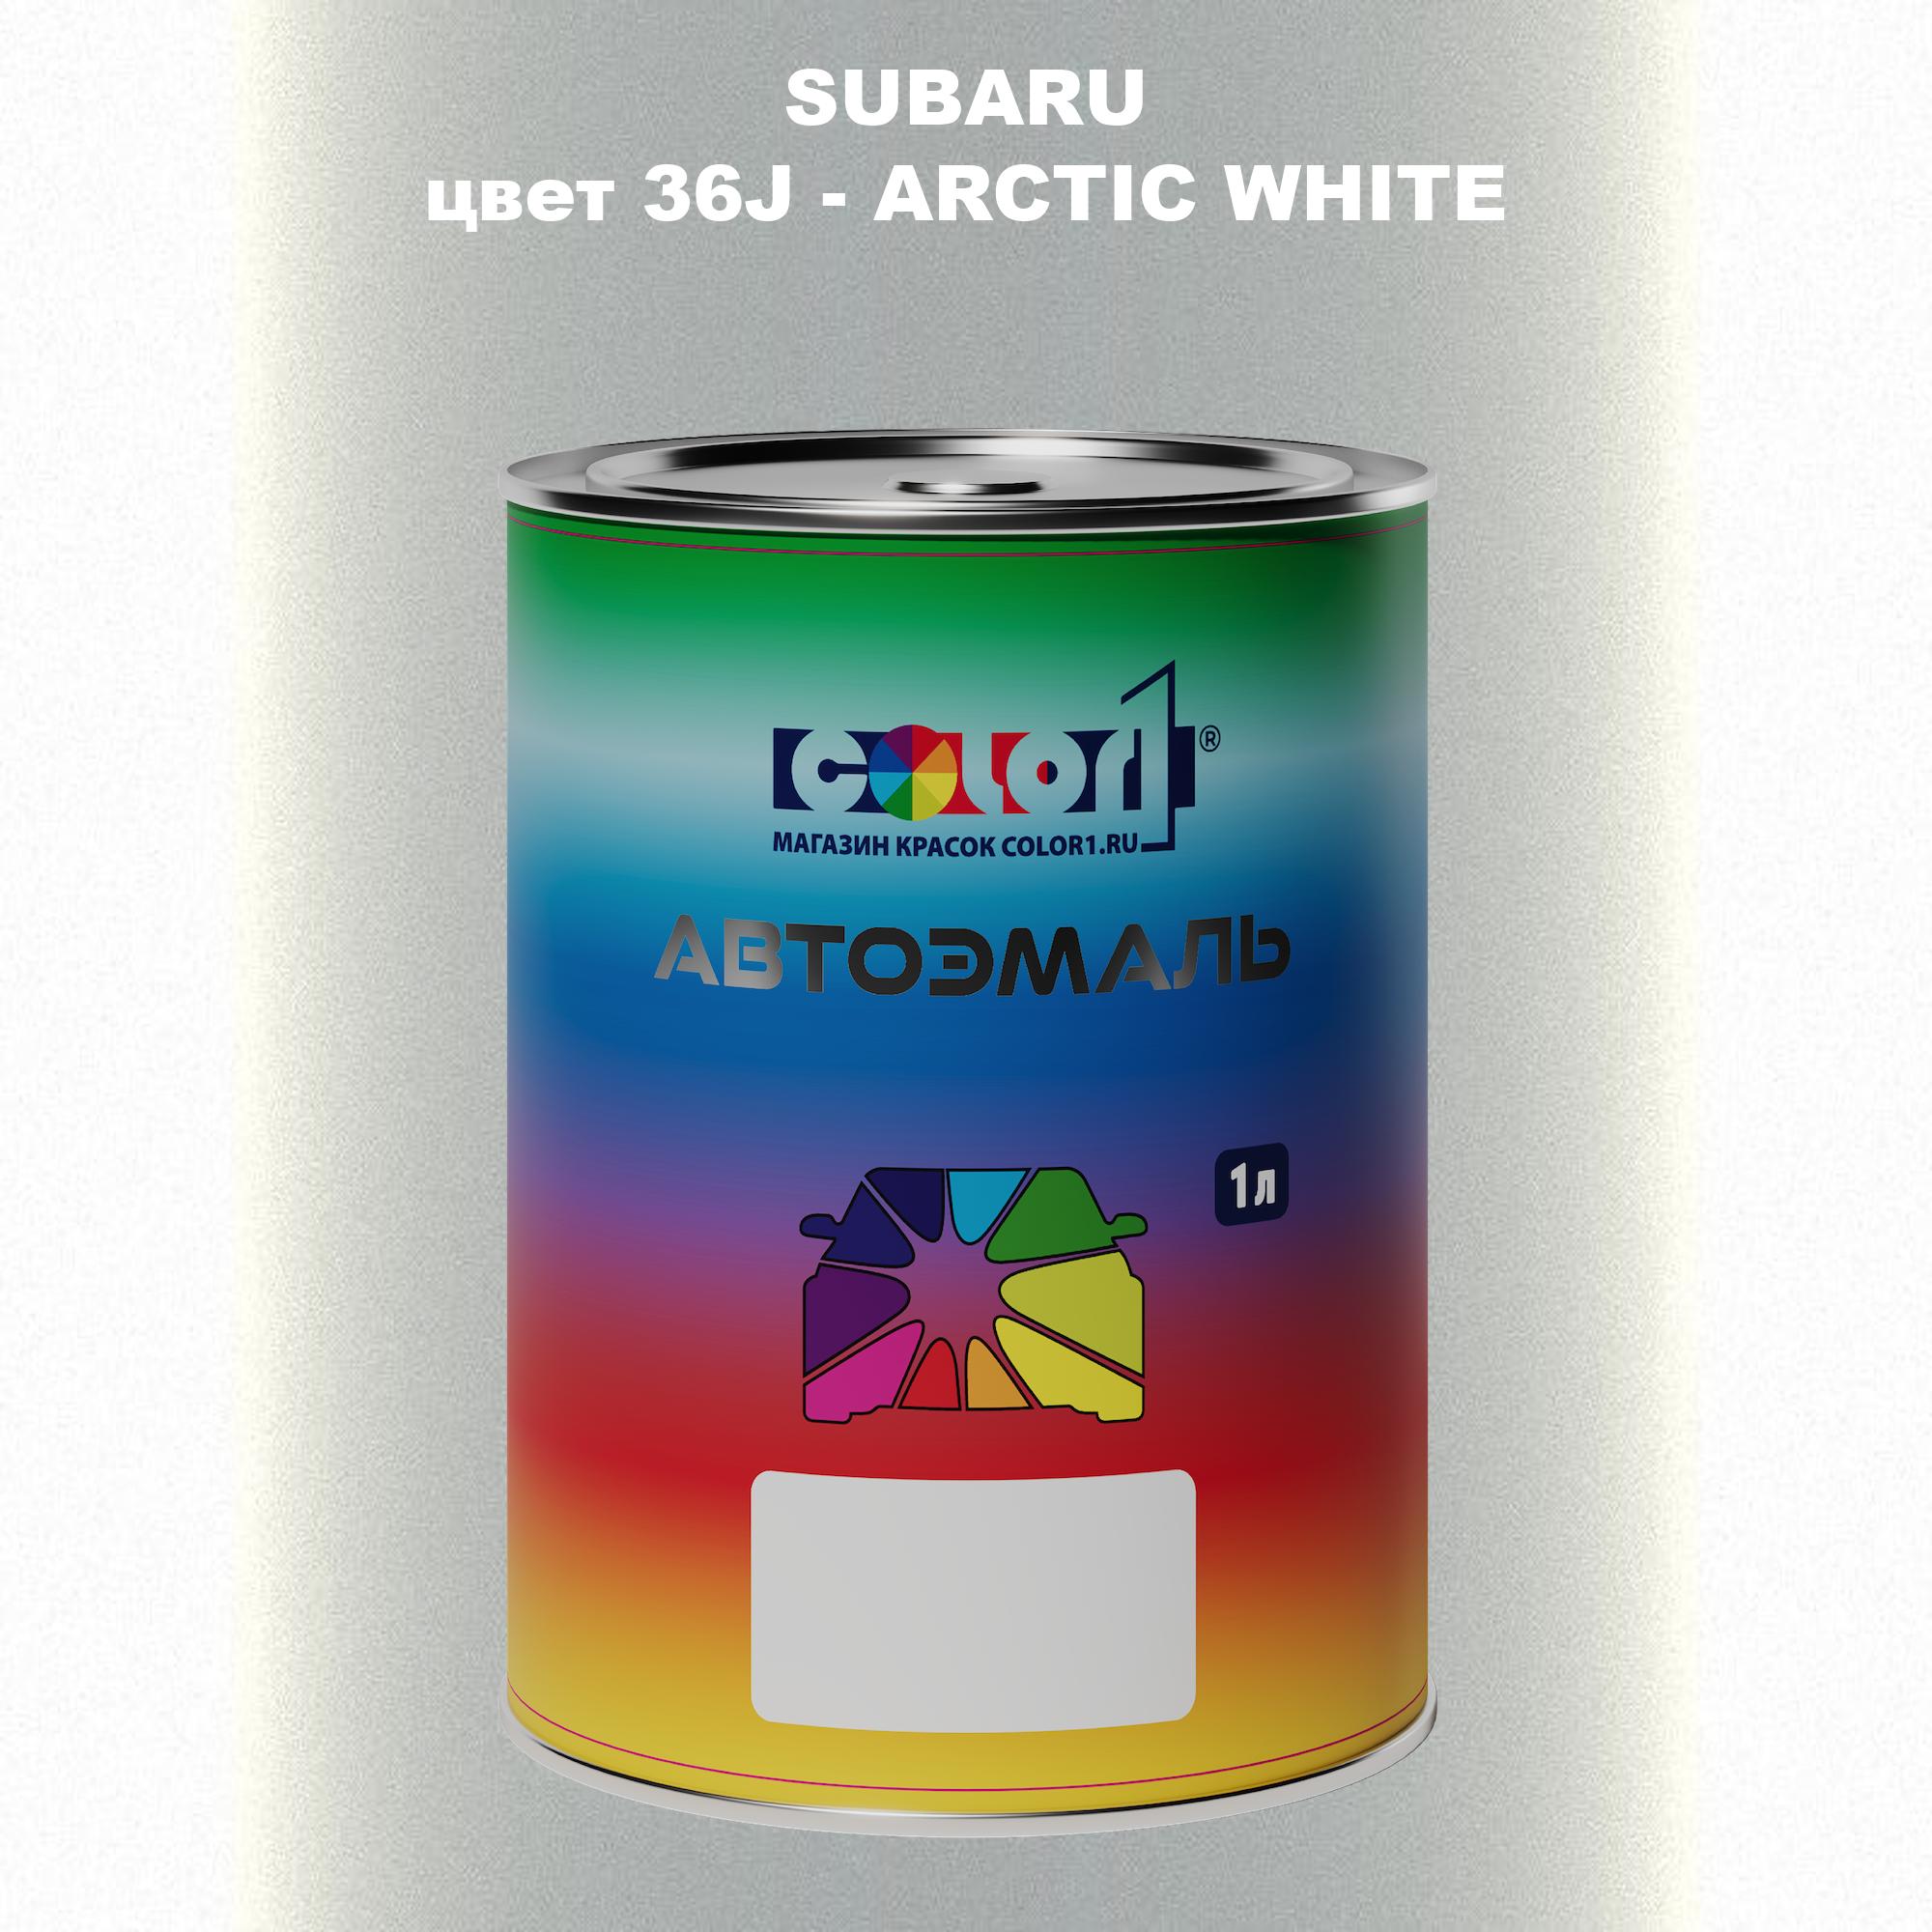 Автомобильная краска COLOR1 для SUBARU, цвет 36J - ARCTIC WHITE